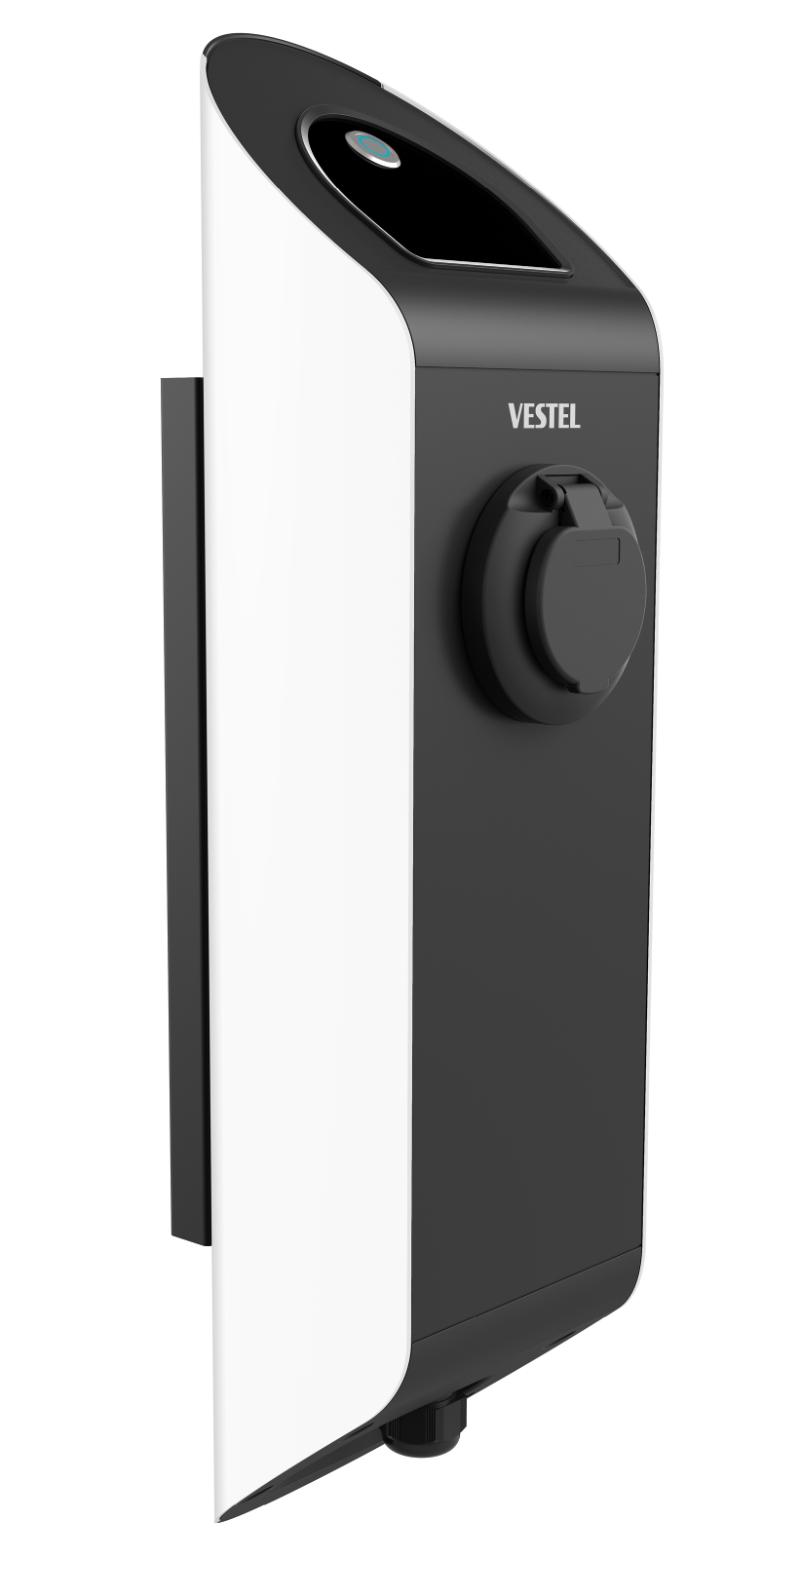 Vestel suministrará las estaciones de recarga de vehículos eléctricos de Iberdrola